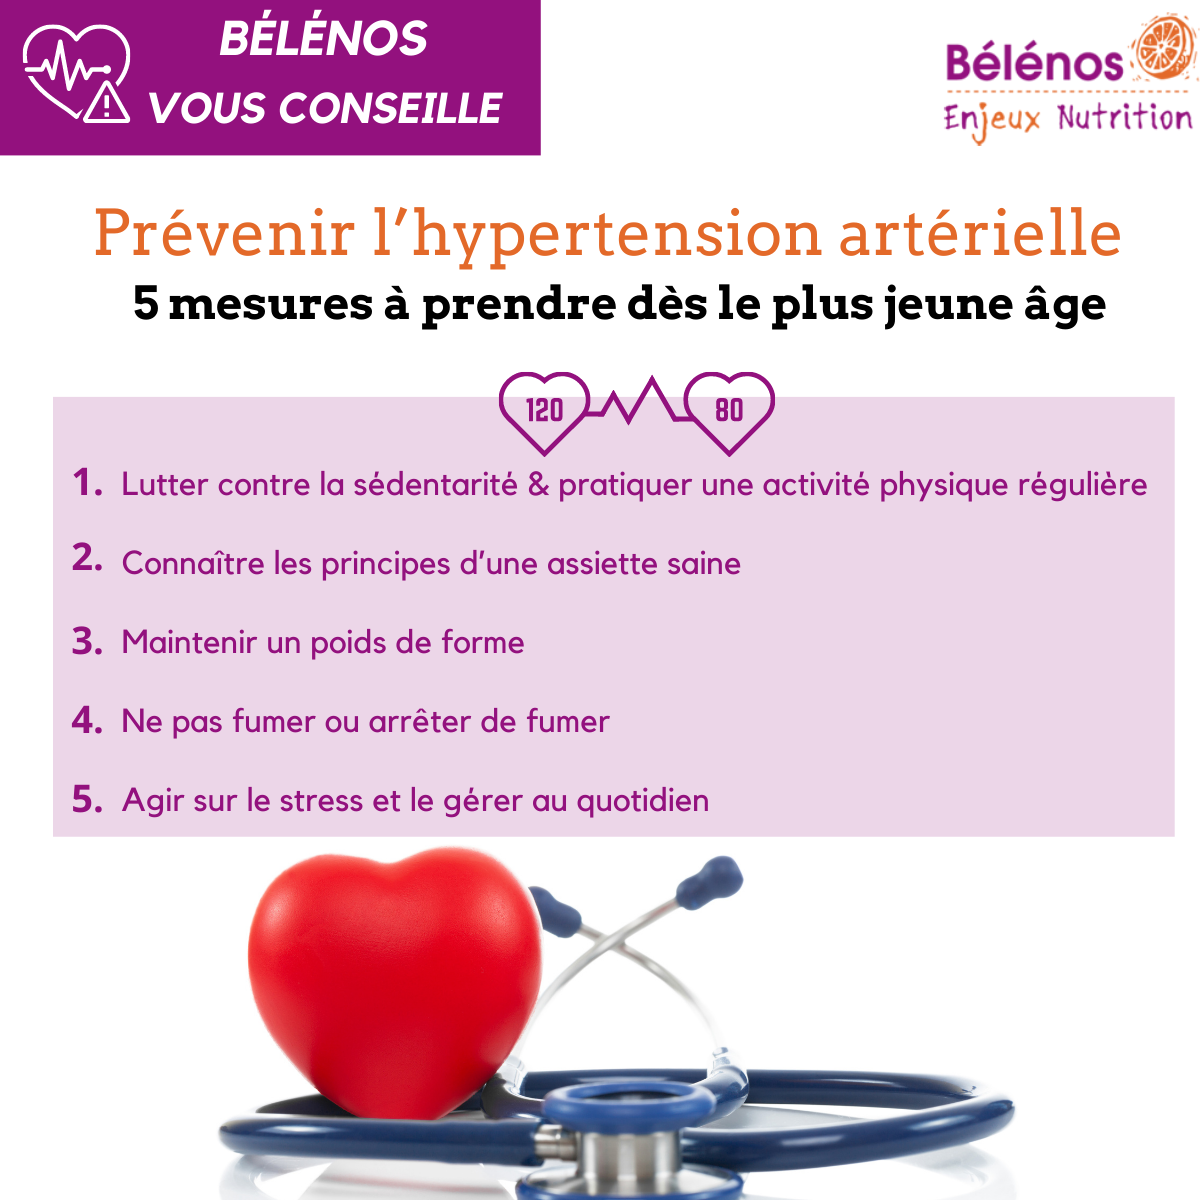 5 conseils pour prévenir l'hypertension